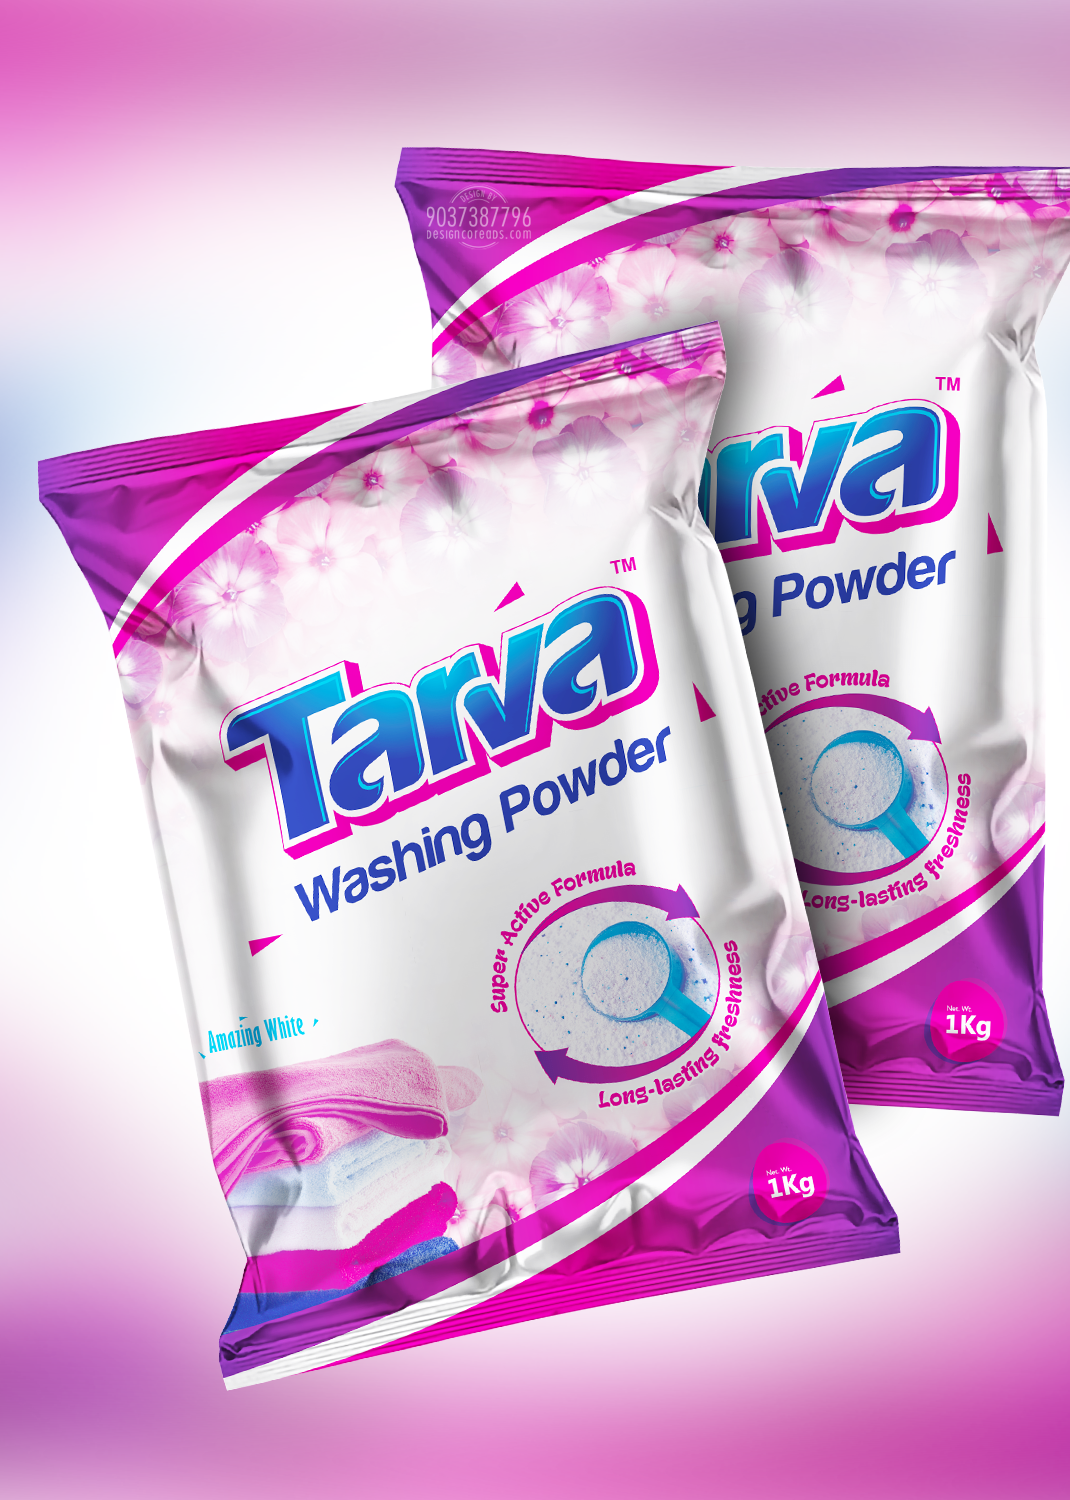 Tarva detergent powder